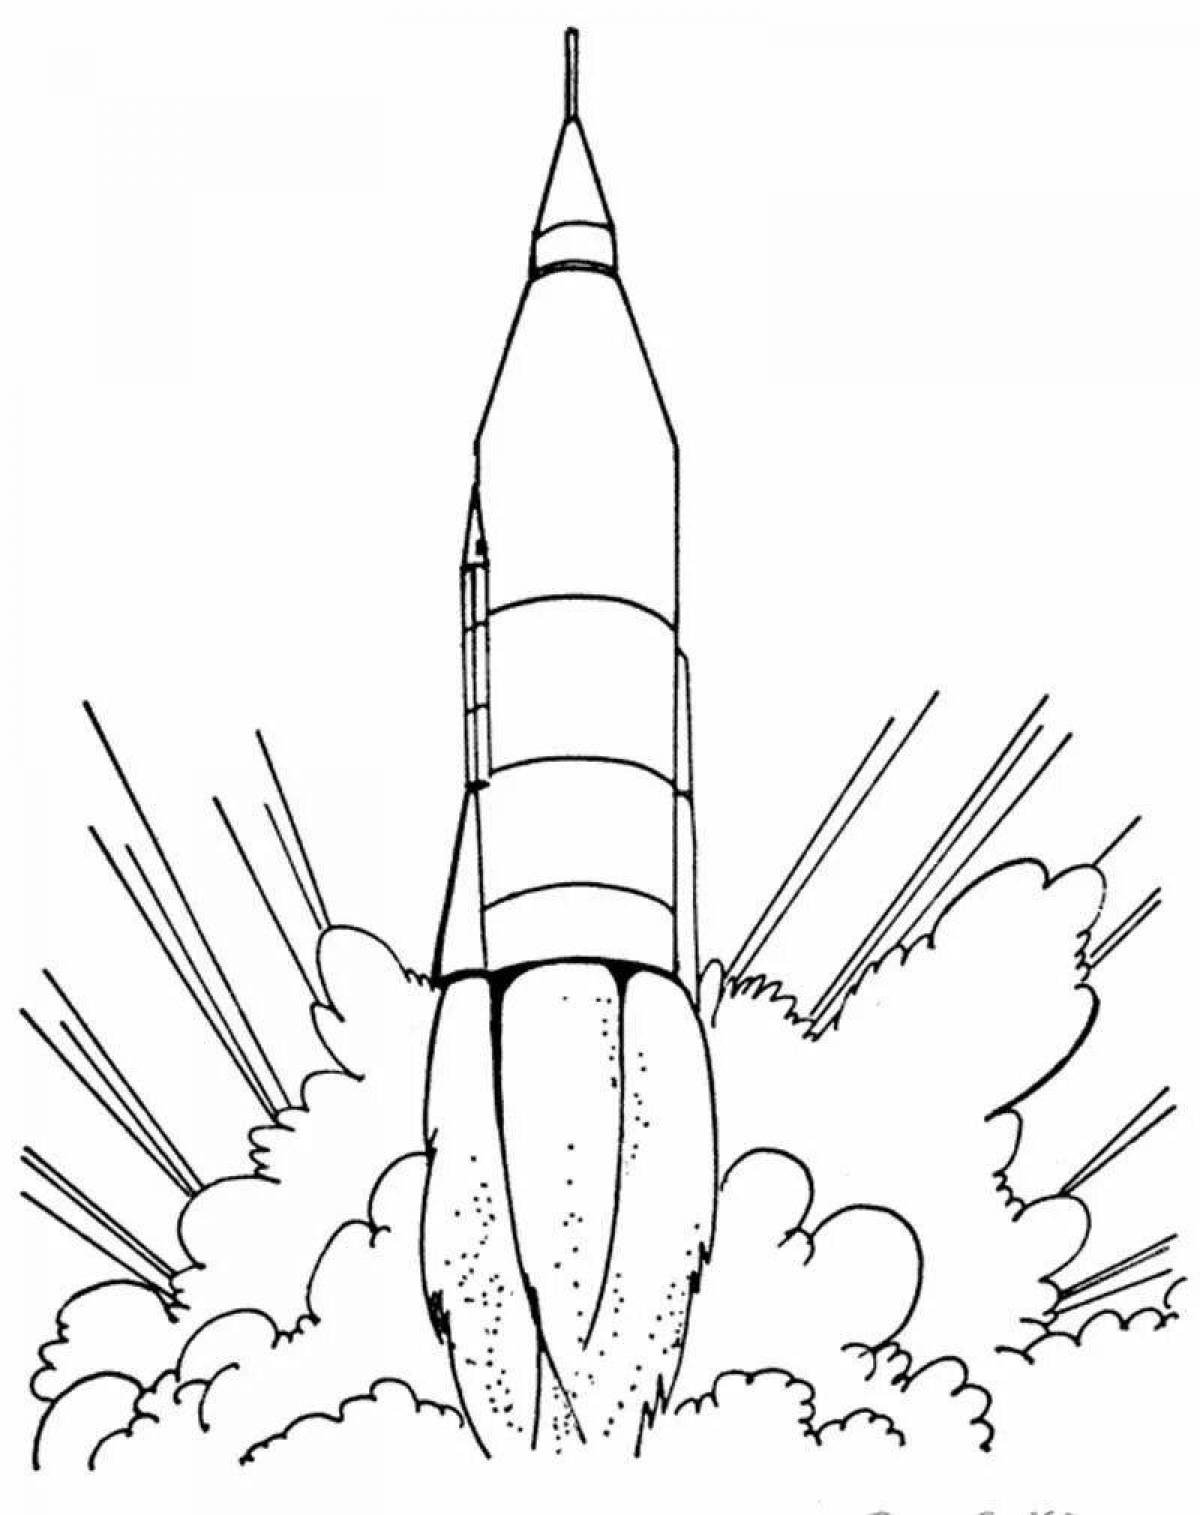 Impressive rocket coloring for boys